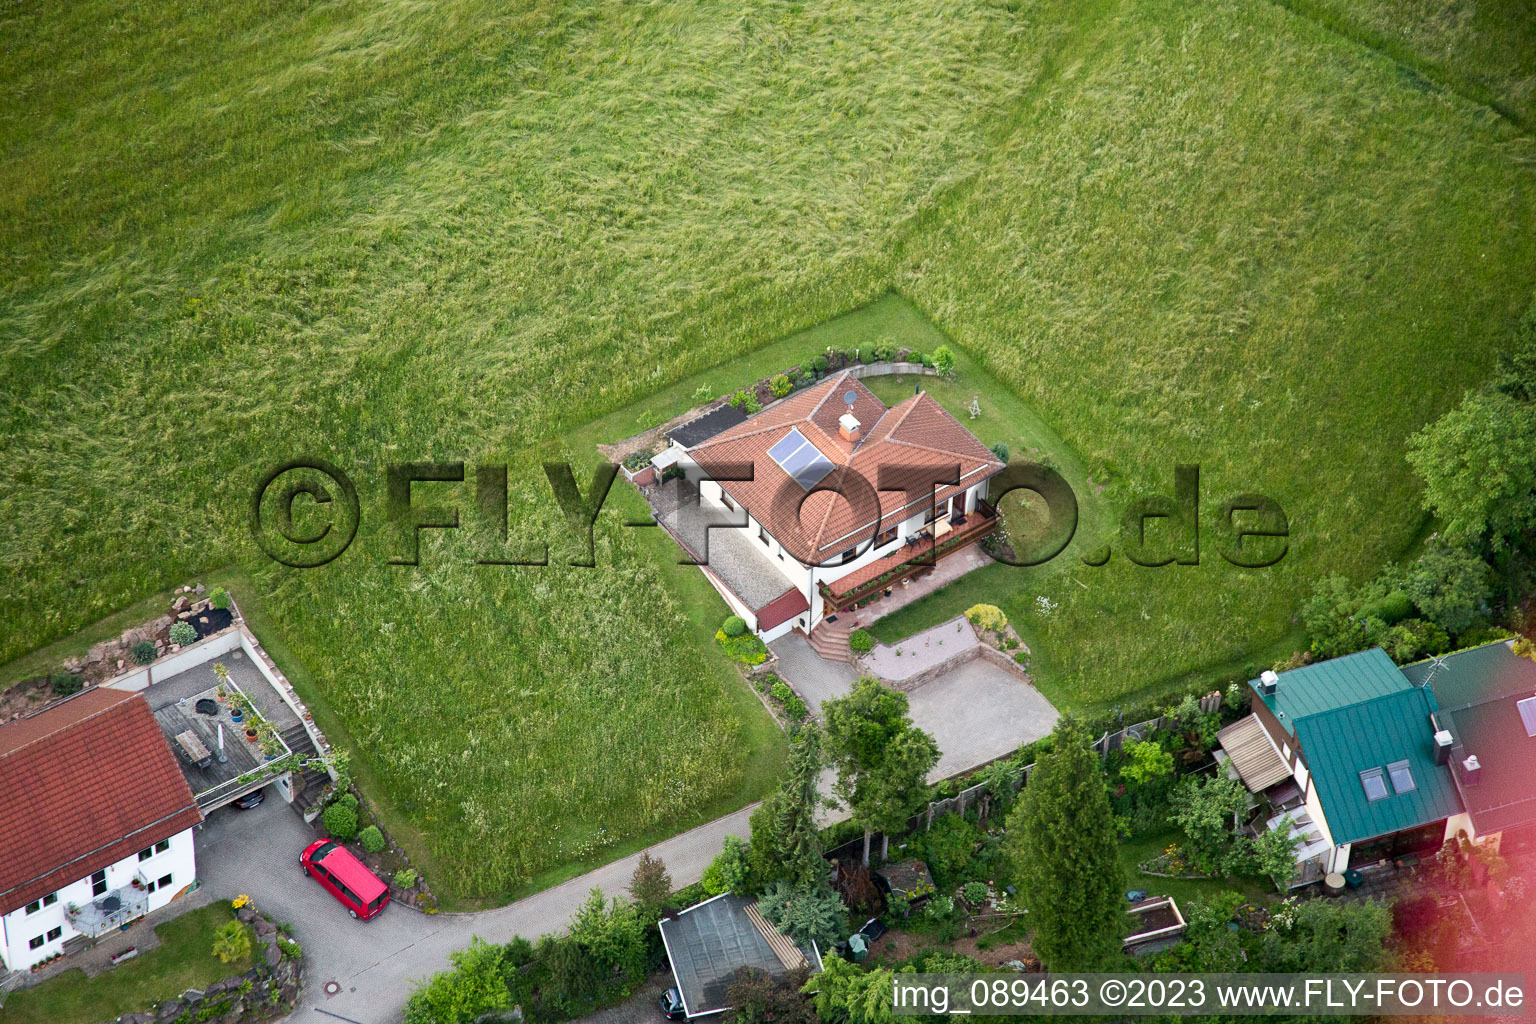 Brombach im Bundesland Baden-Württemberg, Deutschland von einer Drohne aus